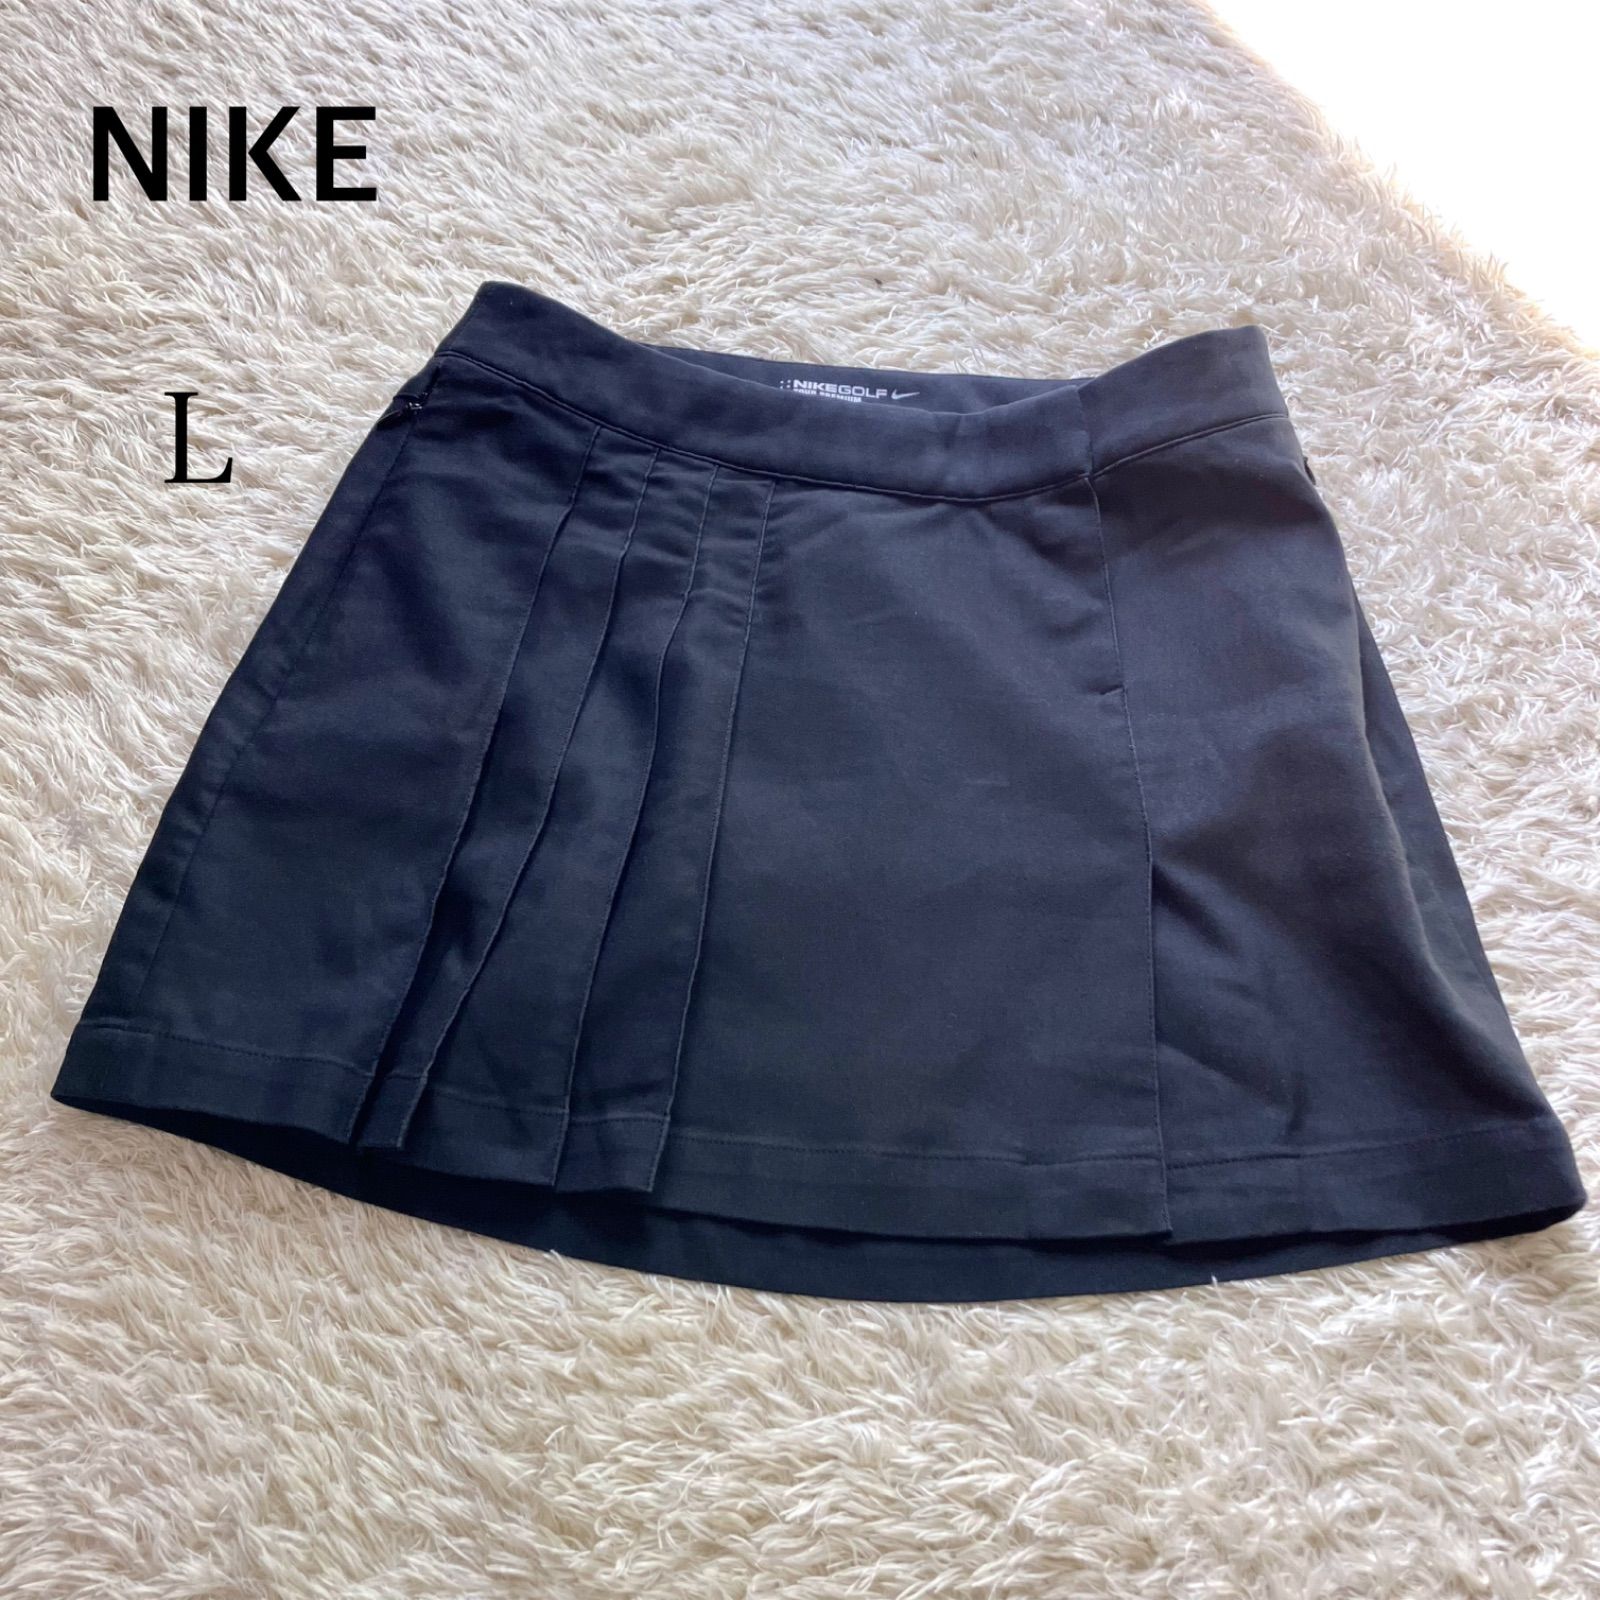 NIKE ナイキゴルフ スカート 黒 ブラック 大きいサイズ L ミニスカート